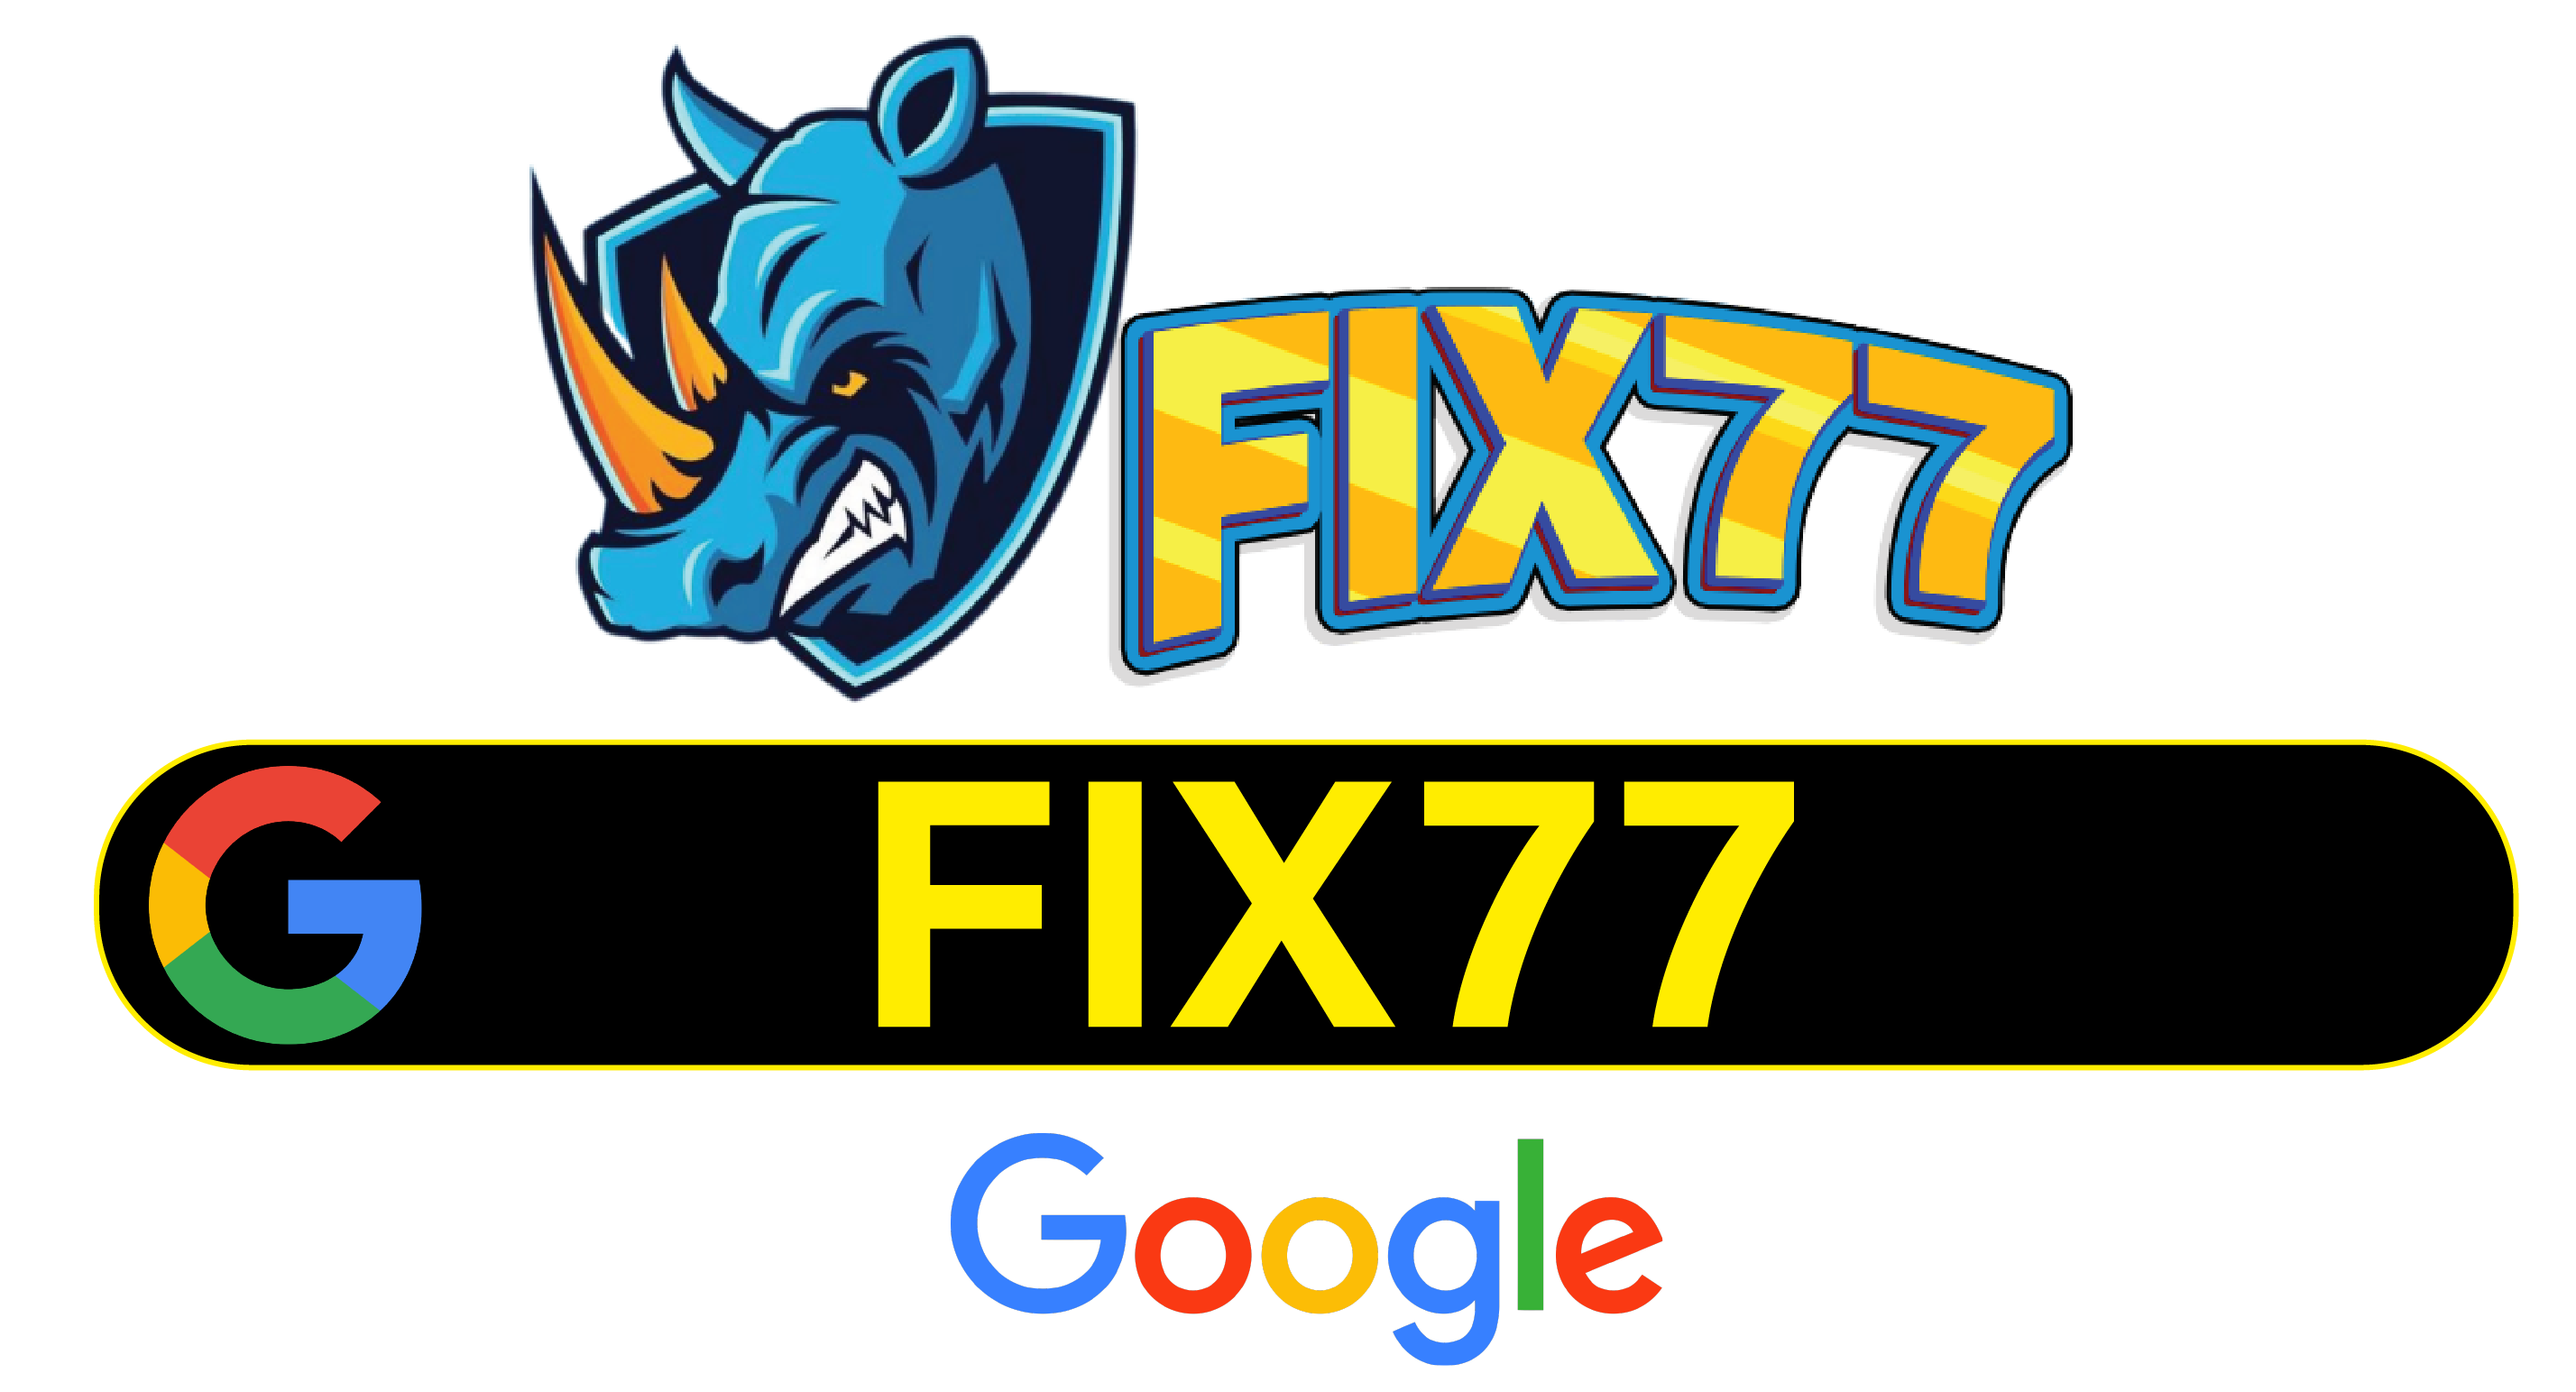 Fix77